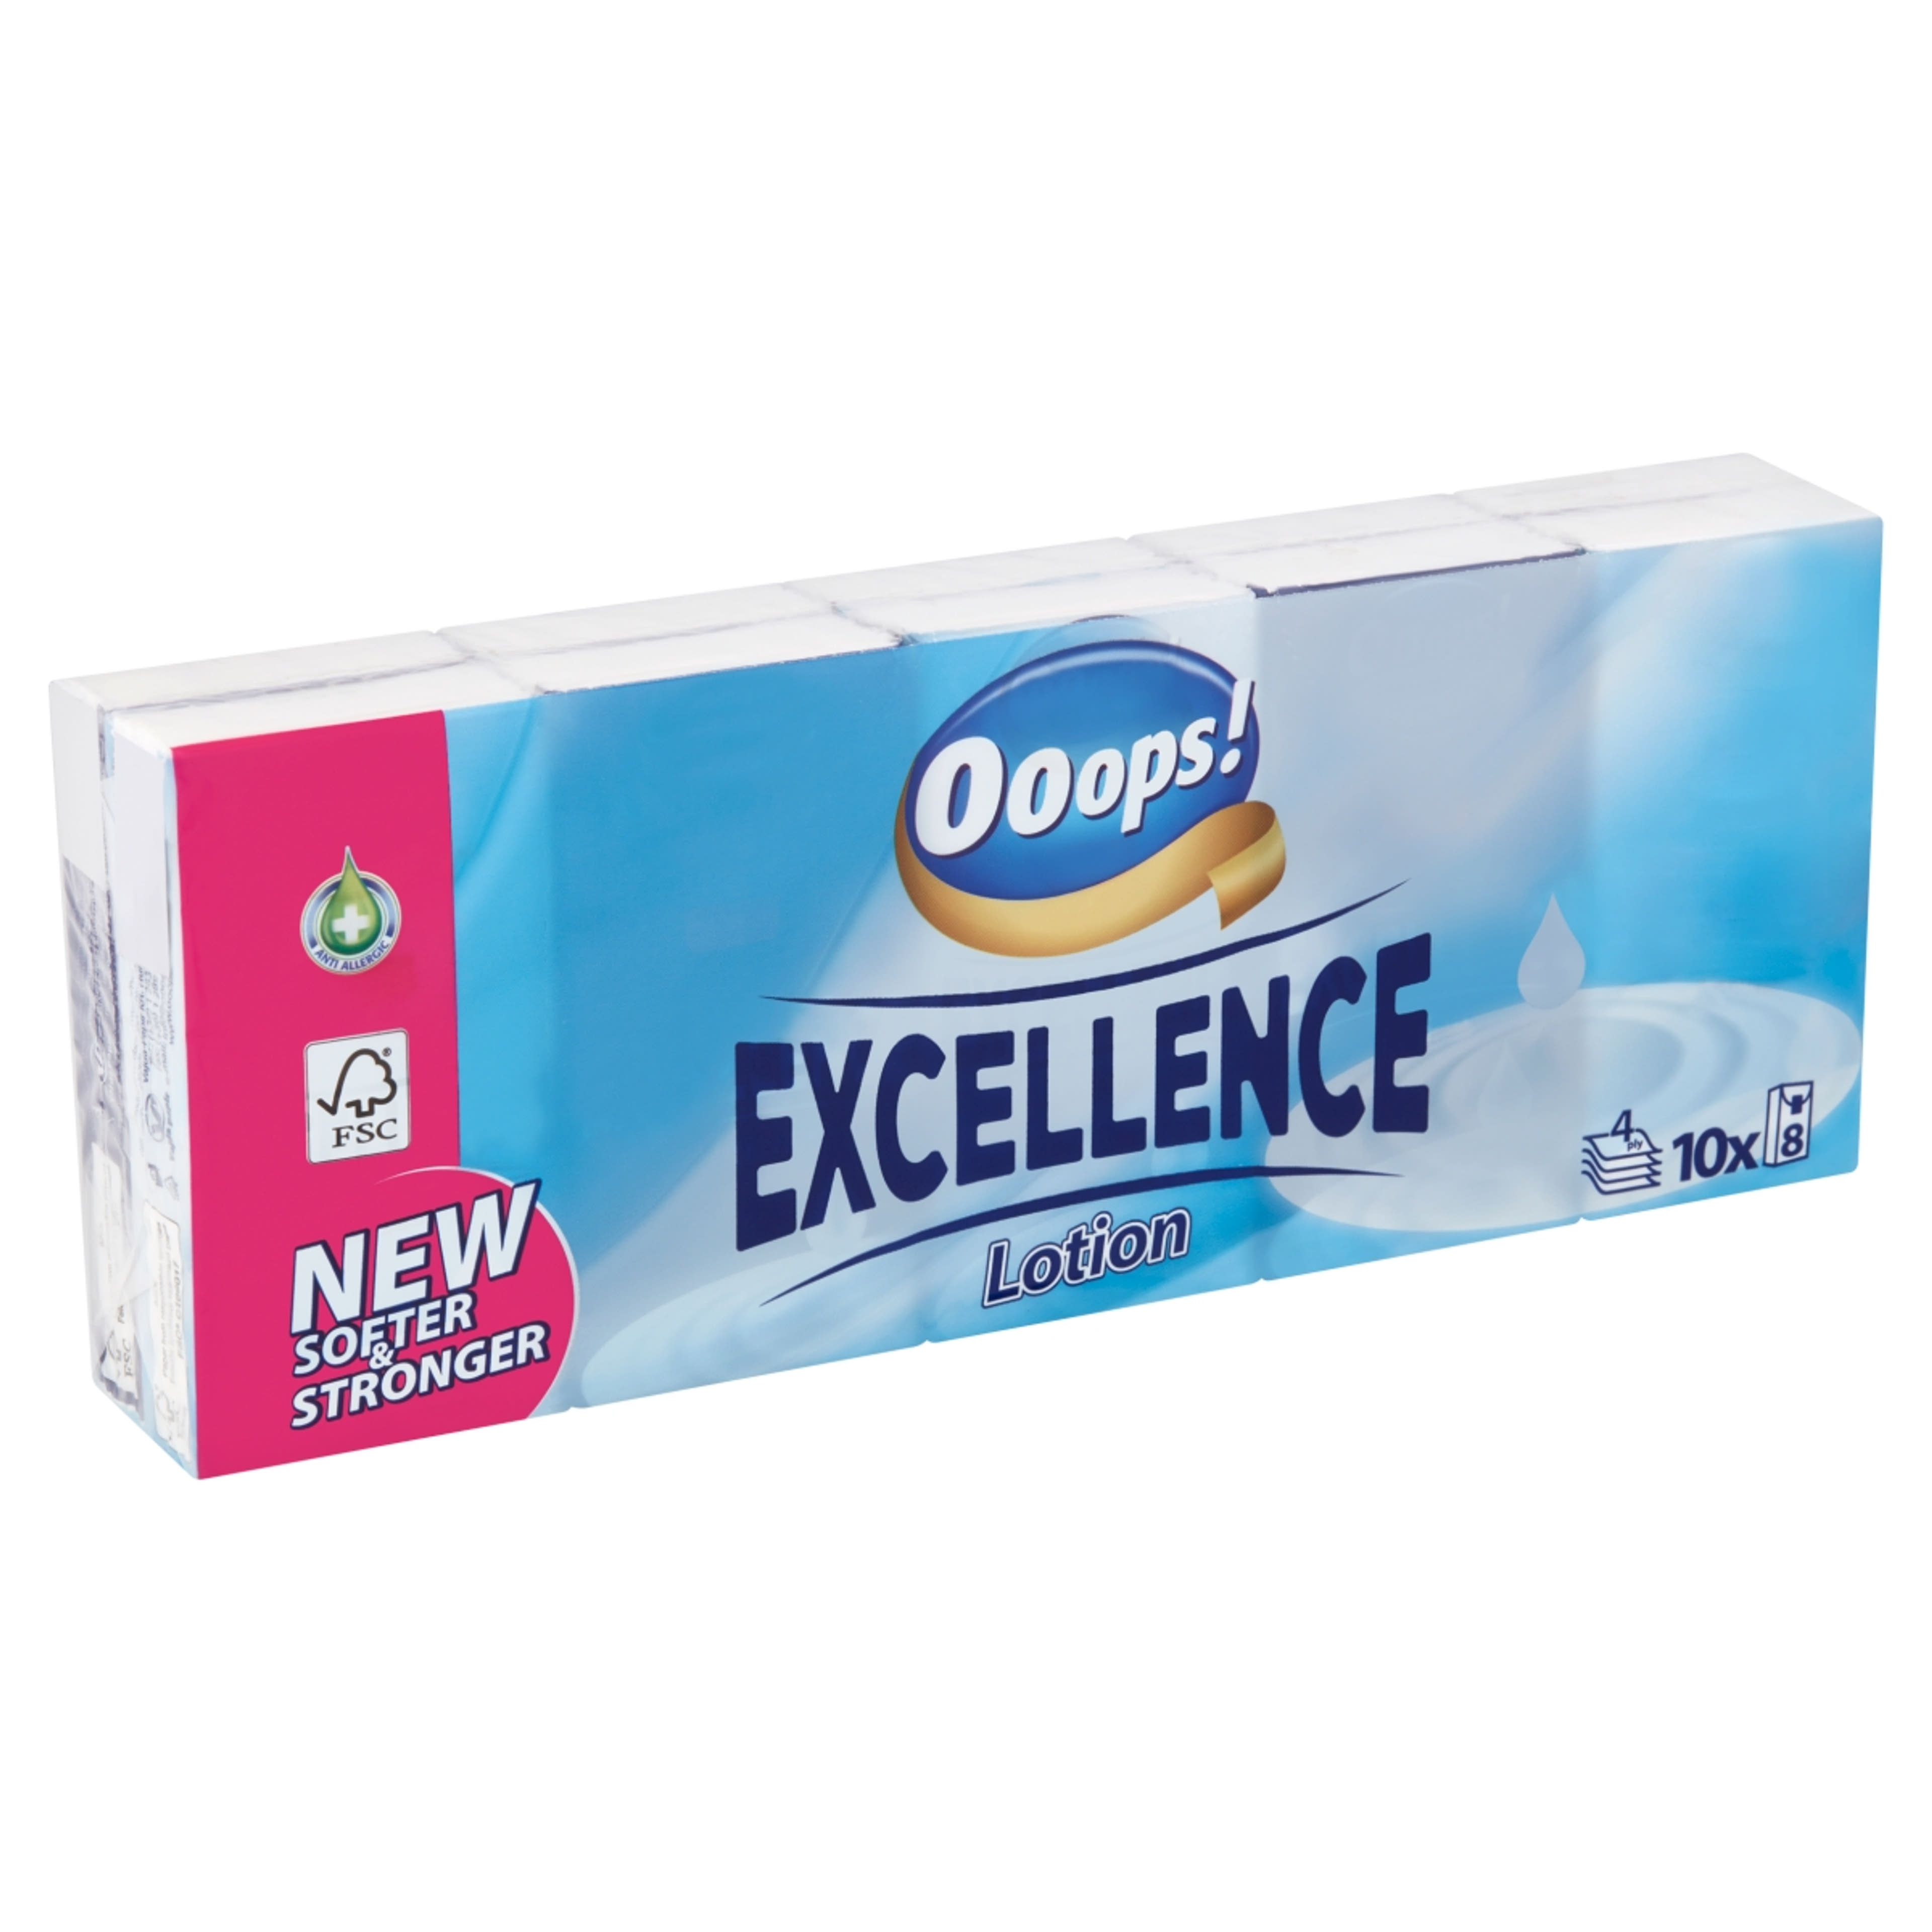 Ooops! Excellence Lotion illatosított papírzsebkendő, 4 rétegű, 10 x 8 db - 1 db-2